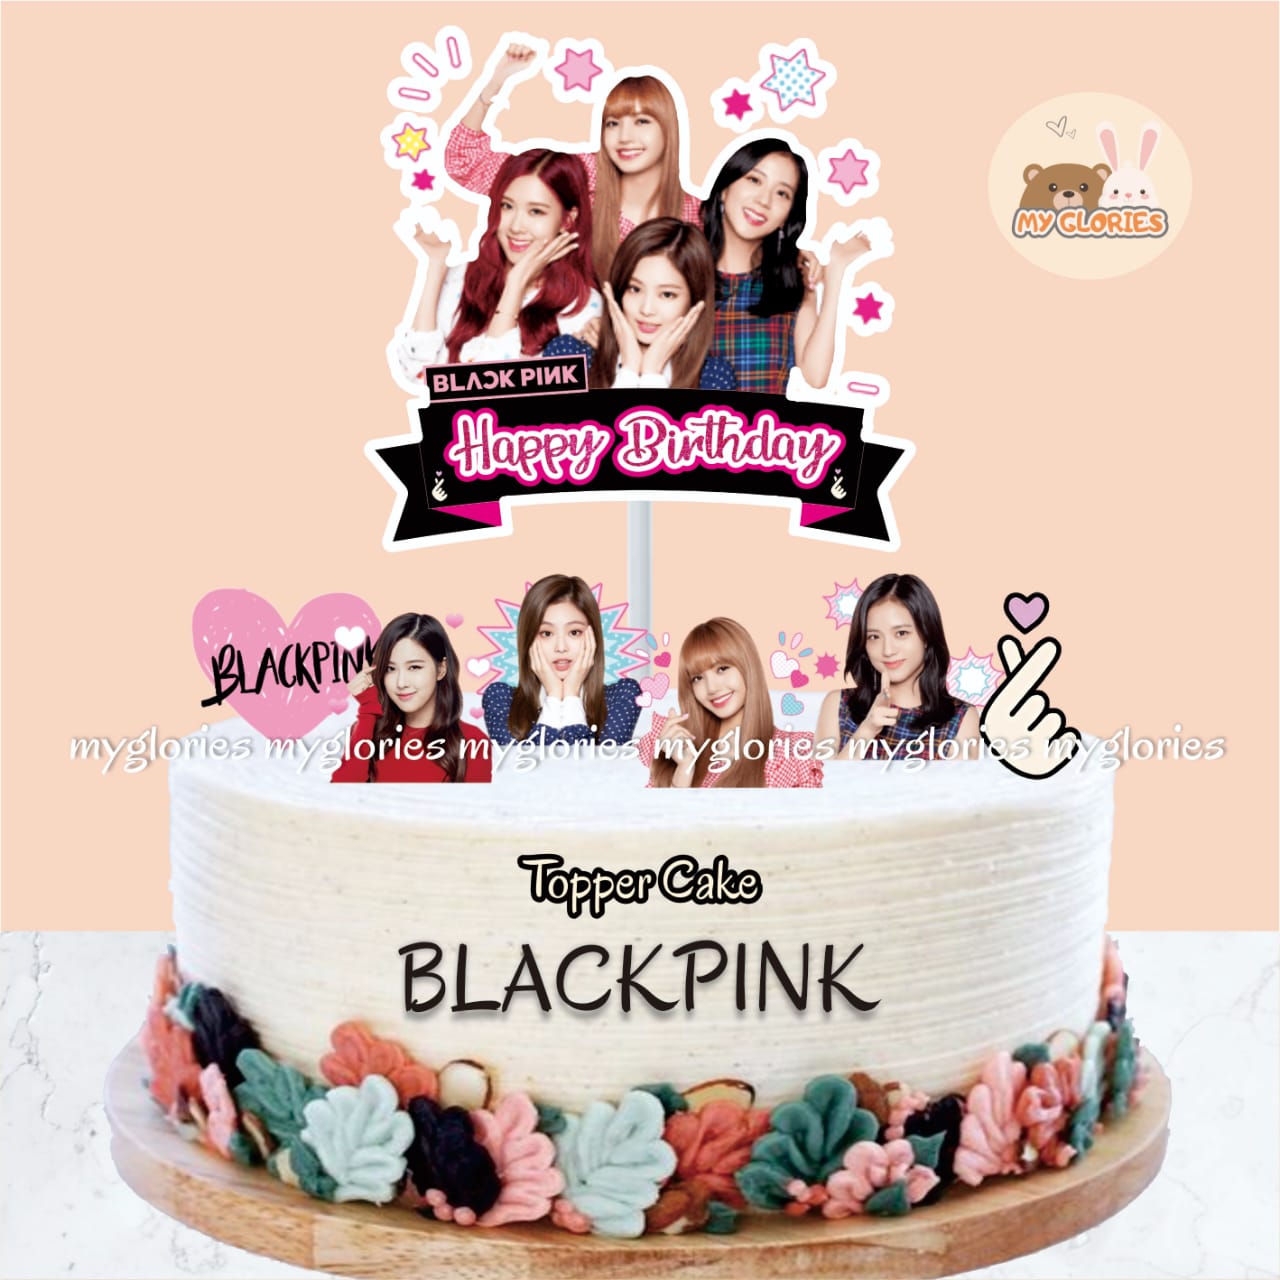 MyGlories Topper Cake Blackpink HD Hiasan Kue Ulang Tahun Karakter Blackpink Lazada Indonesia